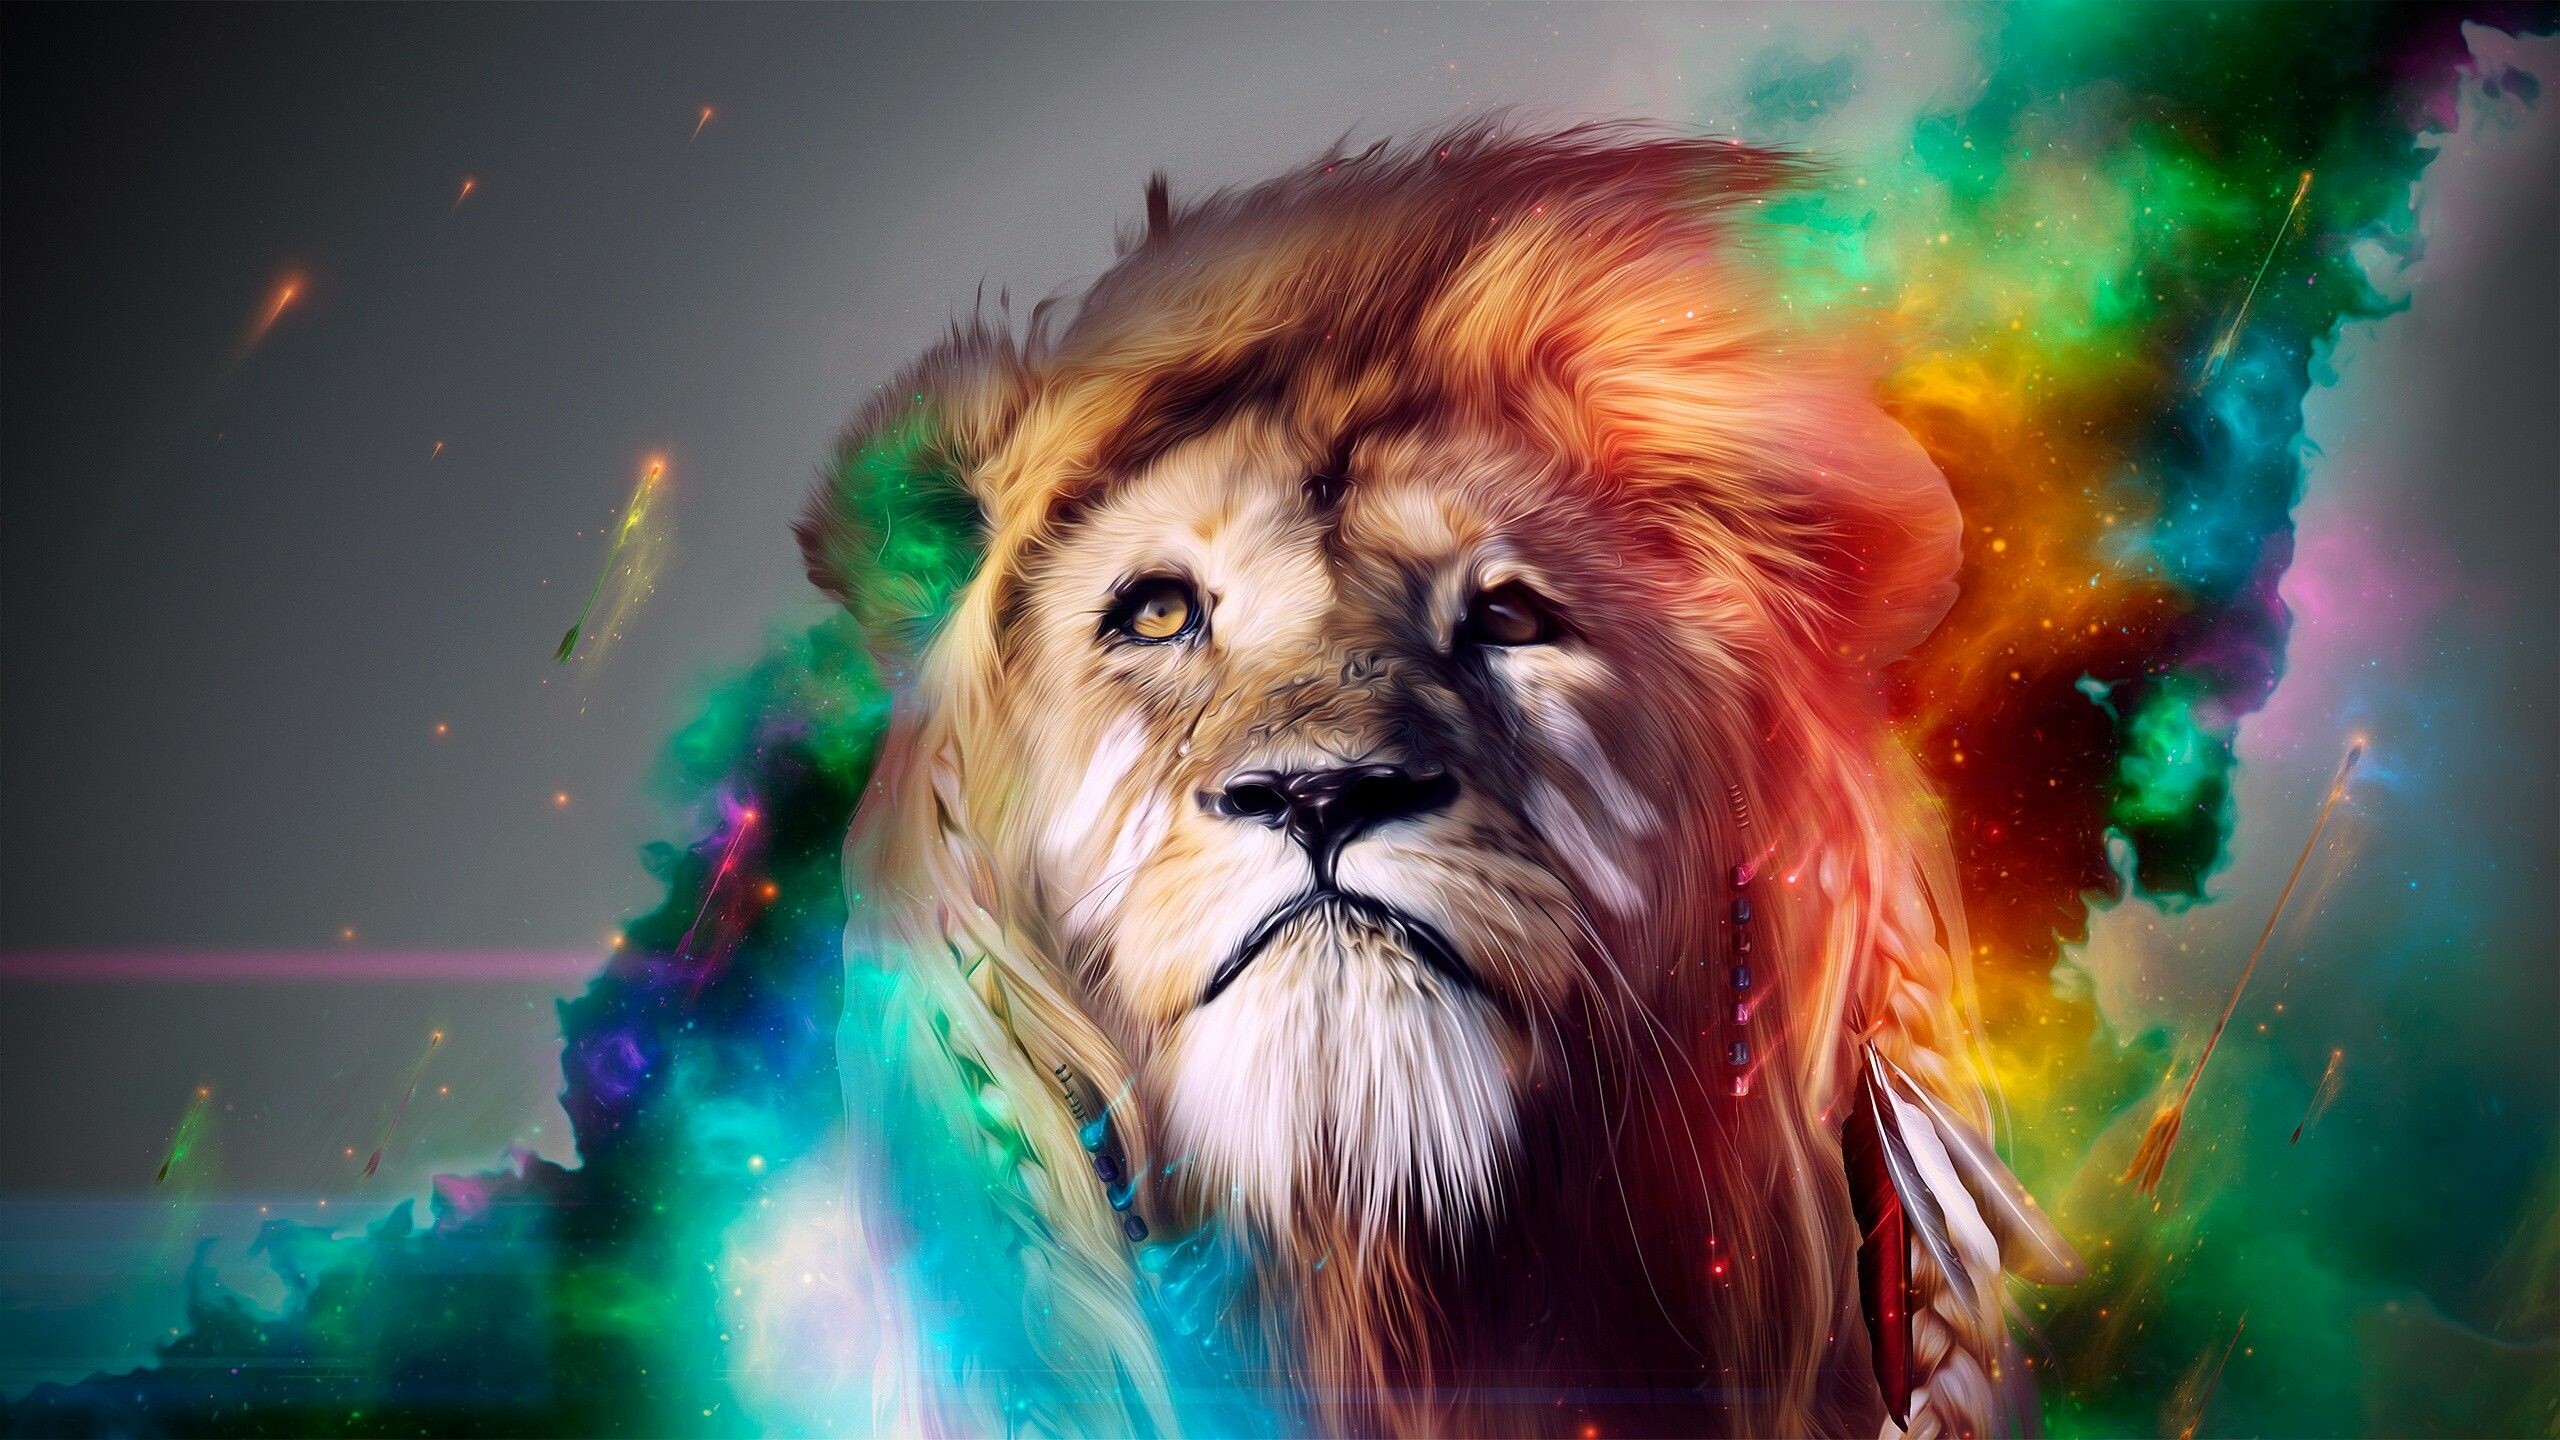 Lioness With A Lion Cub Wallpaper | 1366x768 | ID:36186 -  WallpaperVortex.com